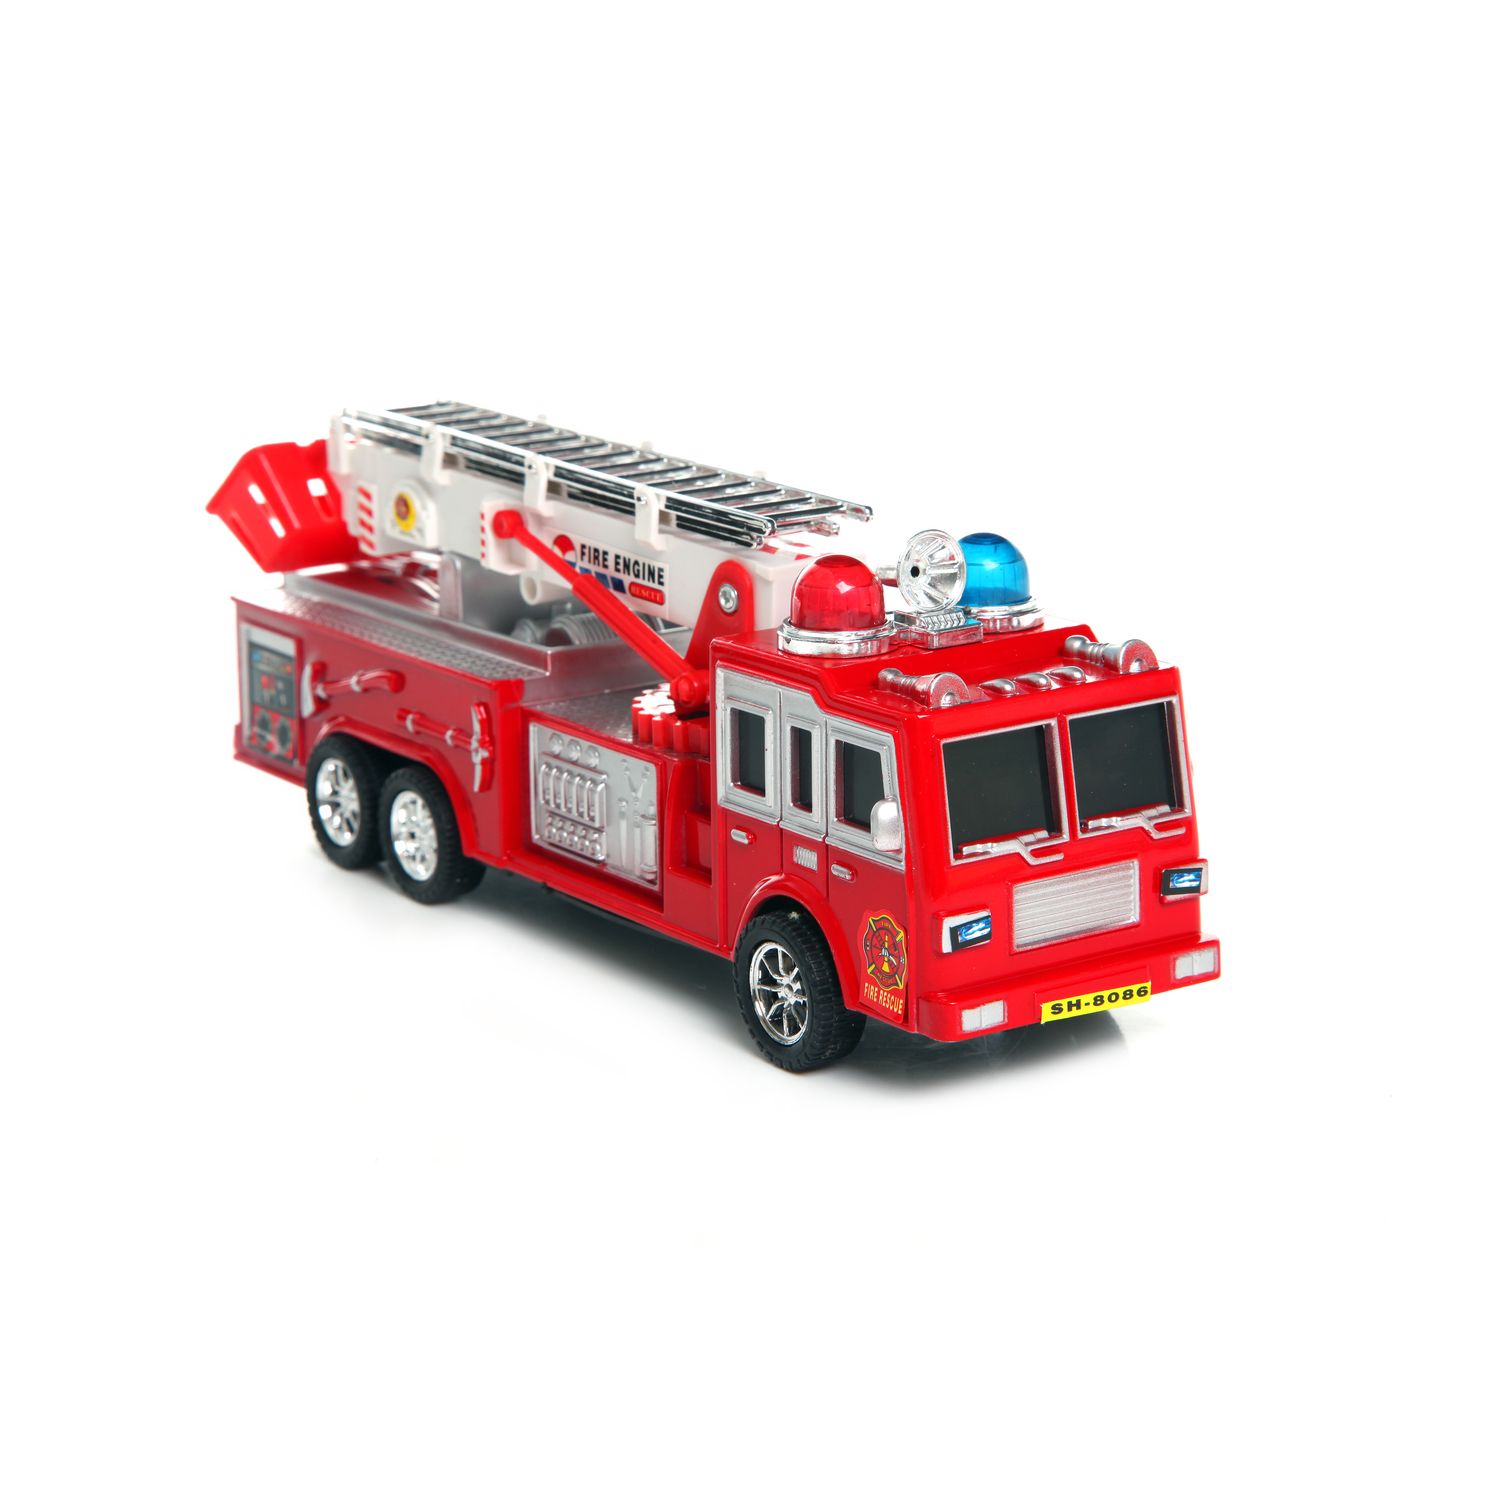 Купить игрушку пожарный. Технопарк ЗИЛ 131 пожарная машина. Noname игрушка машина пожарная. Fire Rescue/23 см б28592 Китай. Машинка игрушка пожарка КАМАЗ.